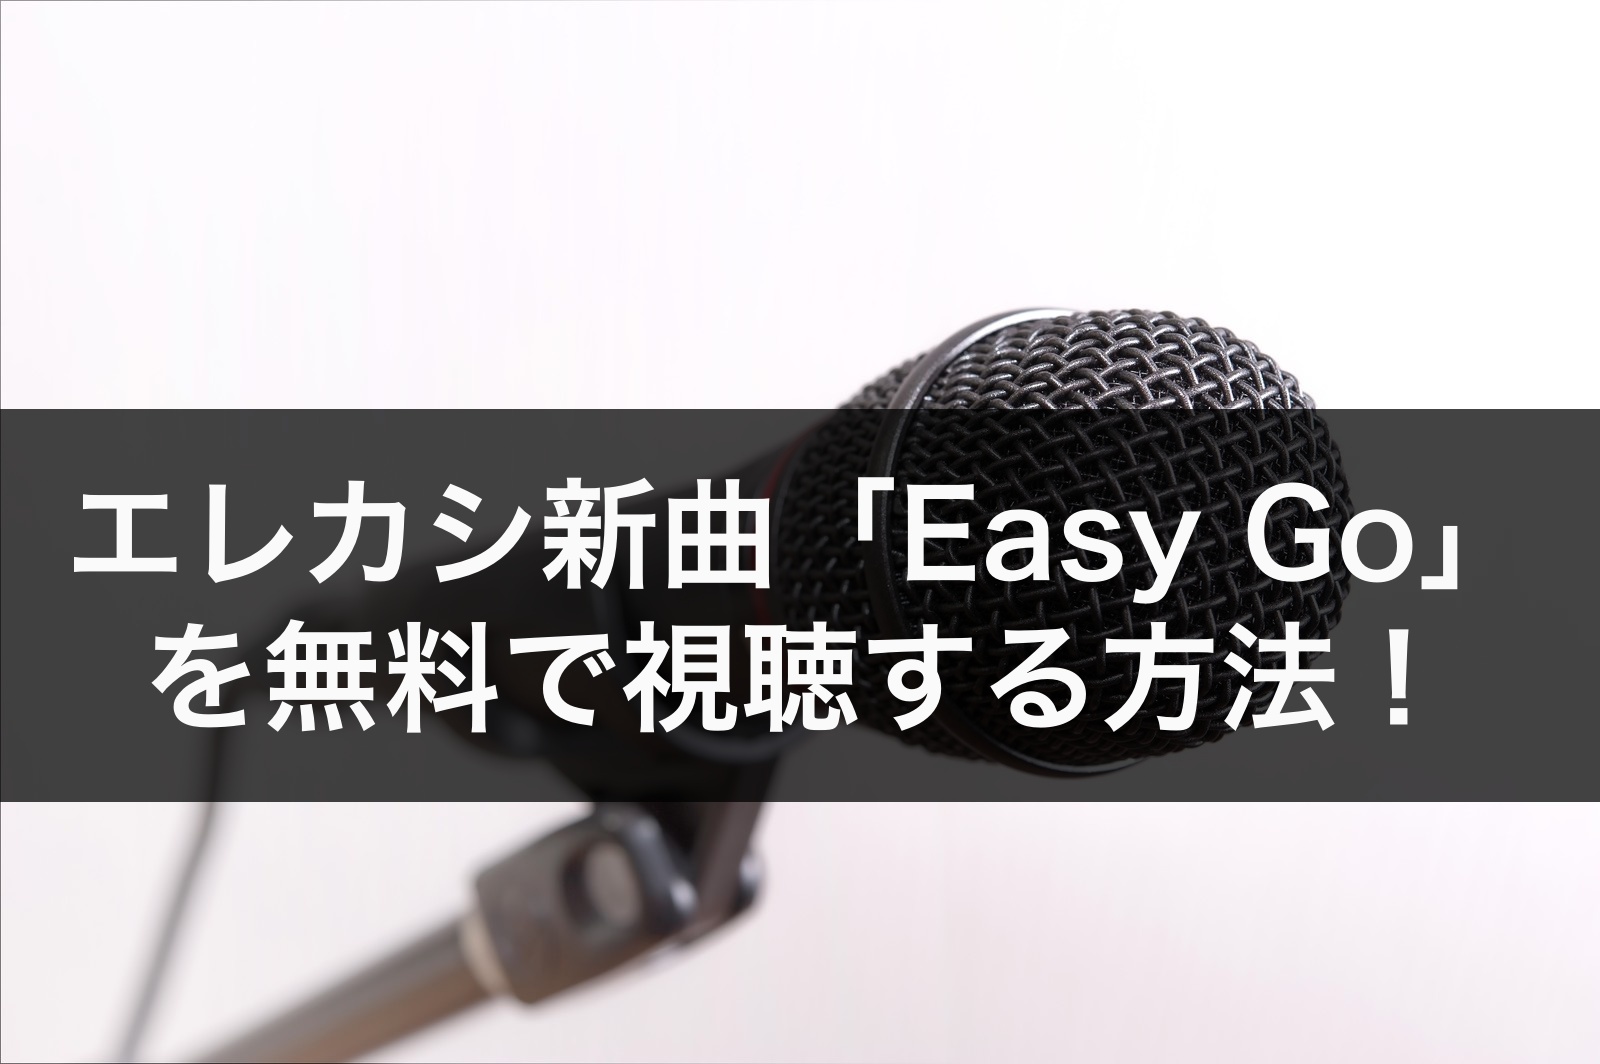 エレカシ新曲 Easy Go フルを無料視聴する方法 歌詞や発売日も調査